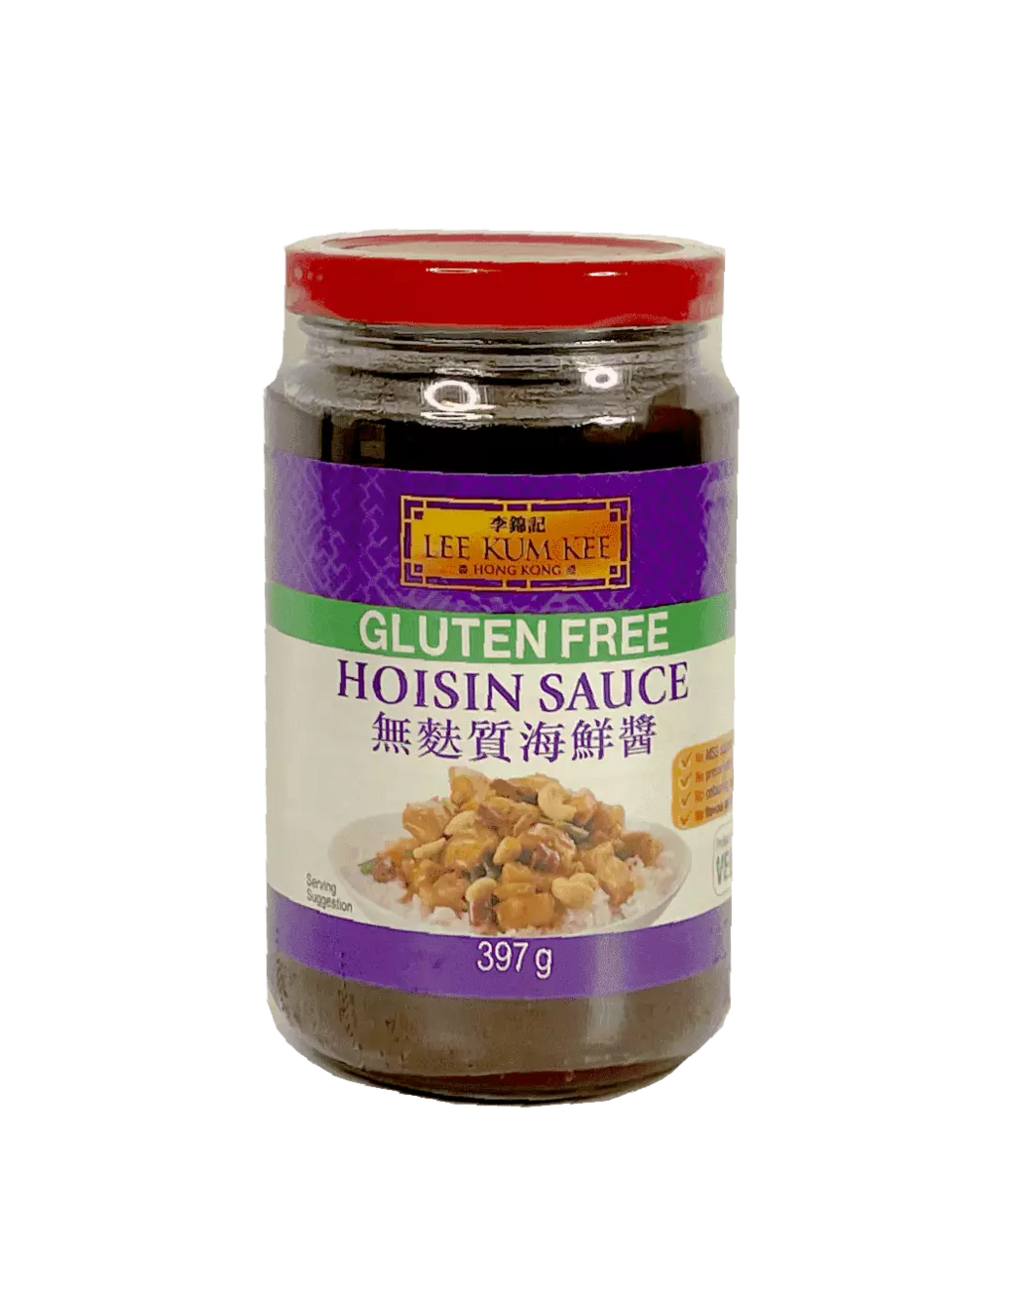 Hoisin Sauce Gluten Free 397g LKK China